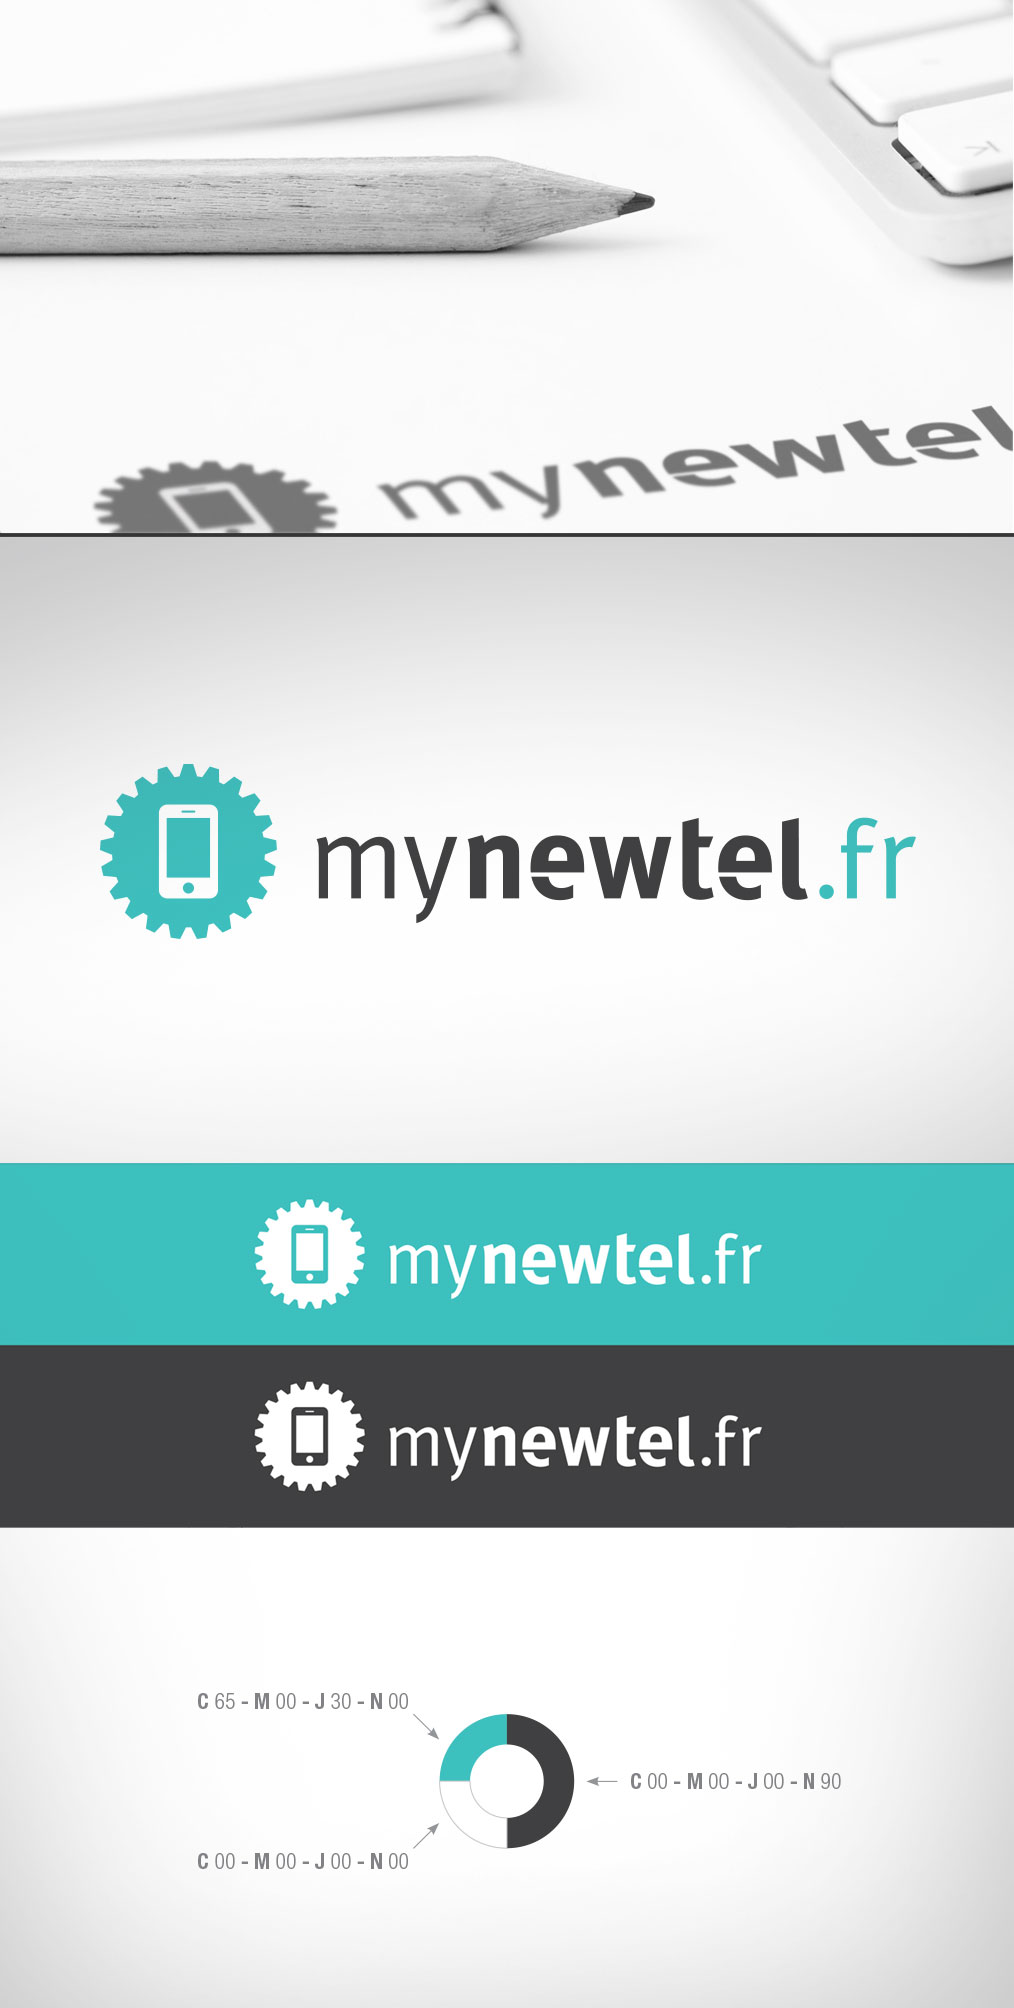 MYNEWTEL.fr